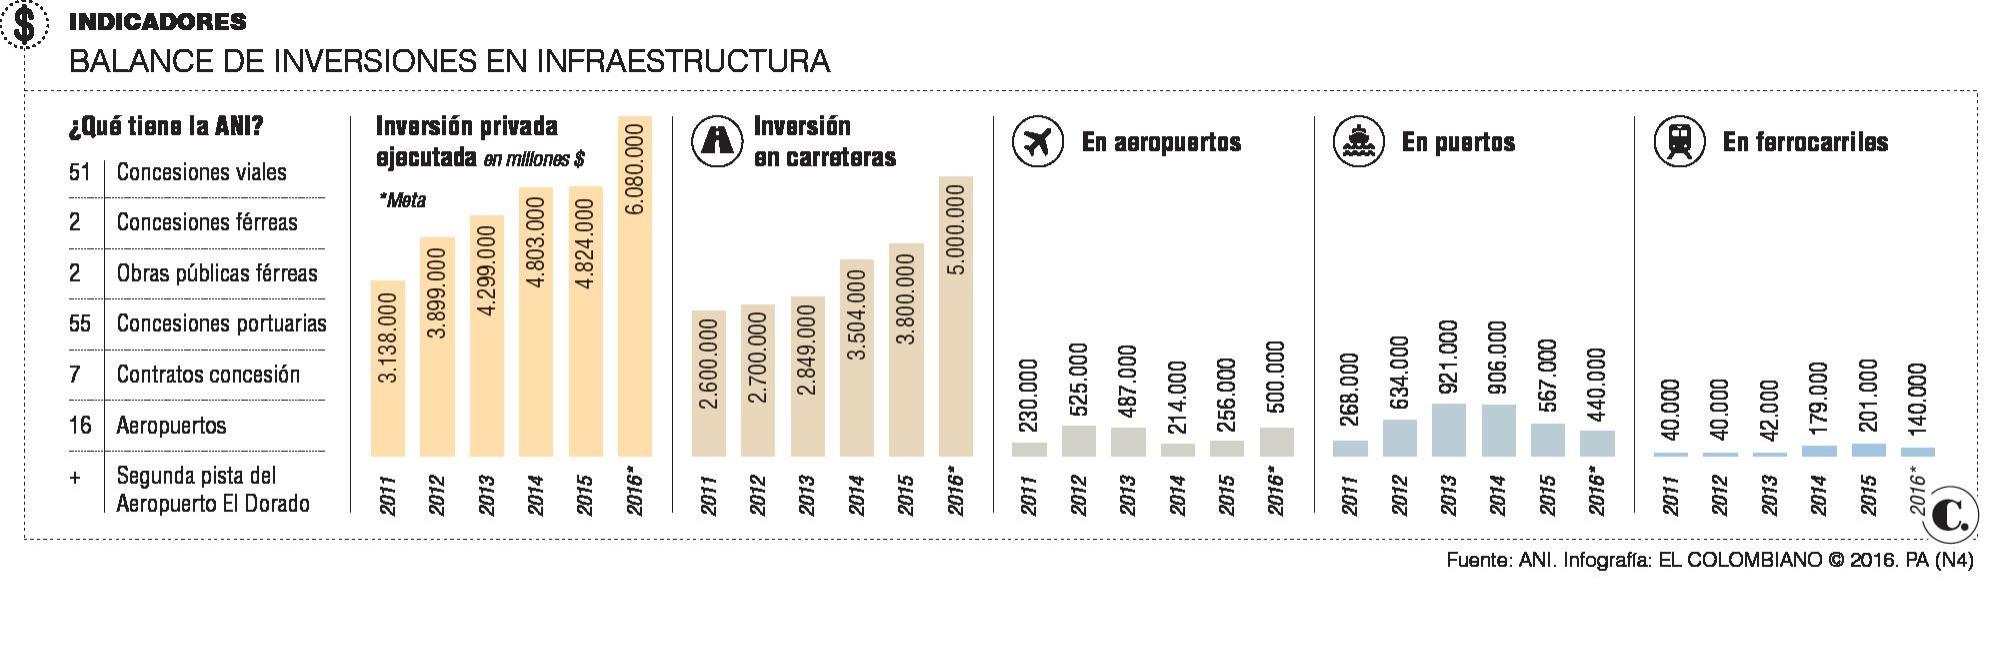 Infraestructura en Colombia: avances y frenos